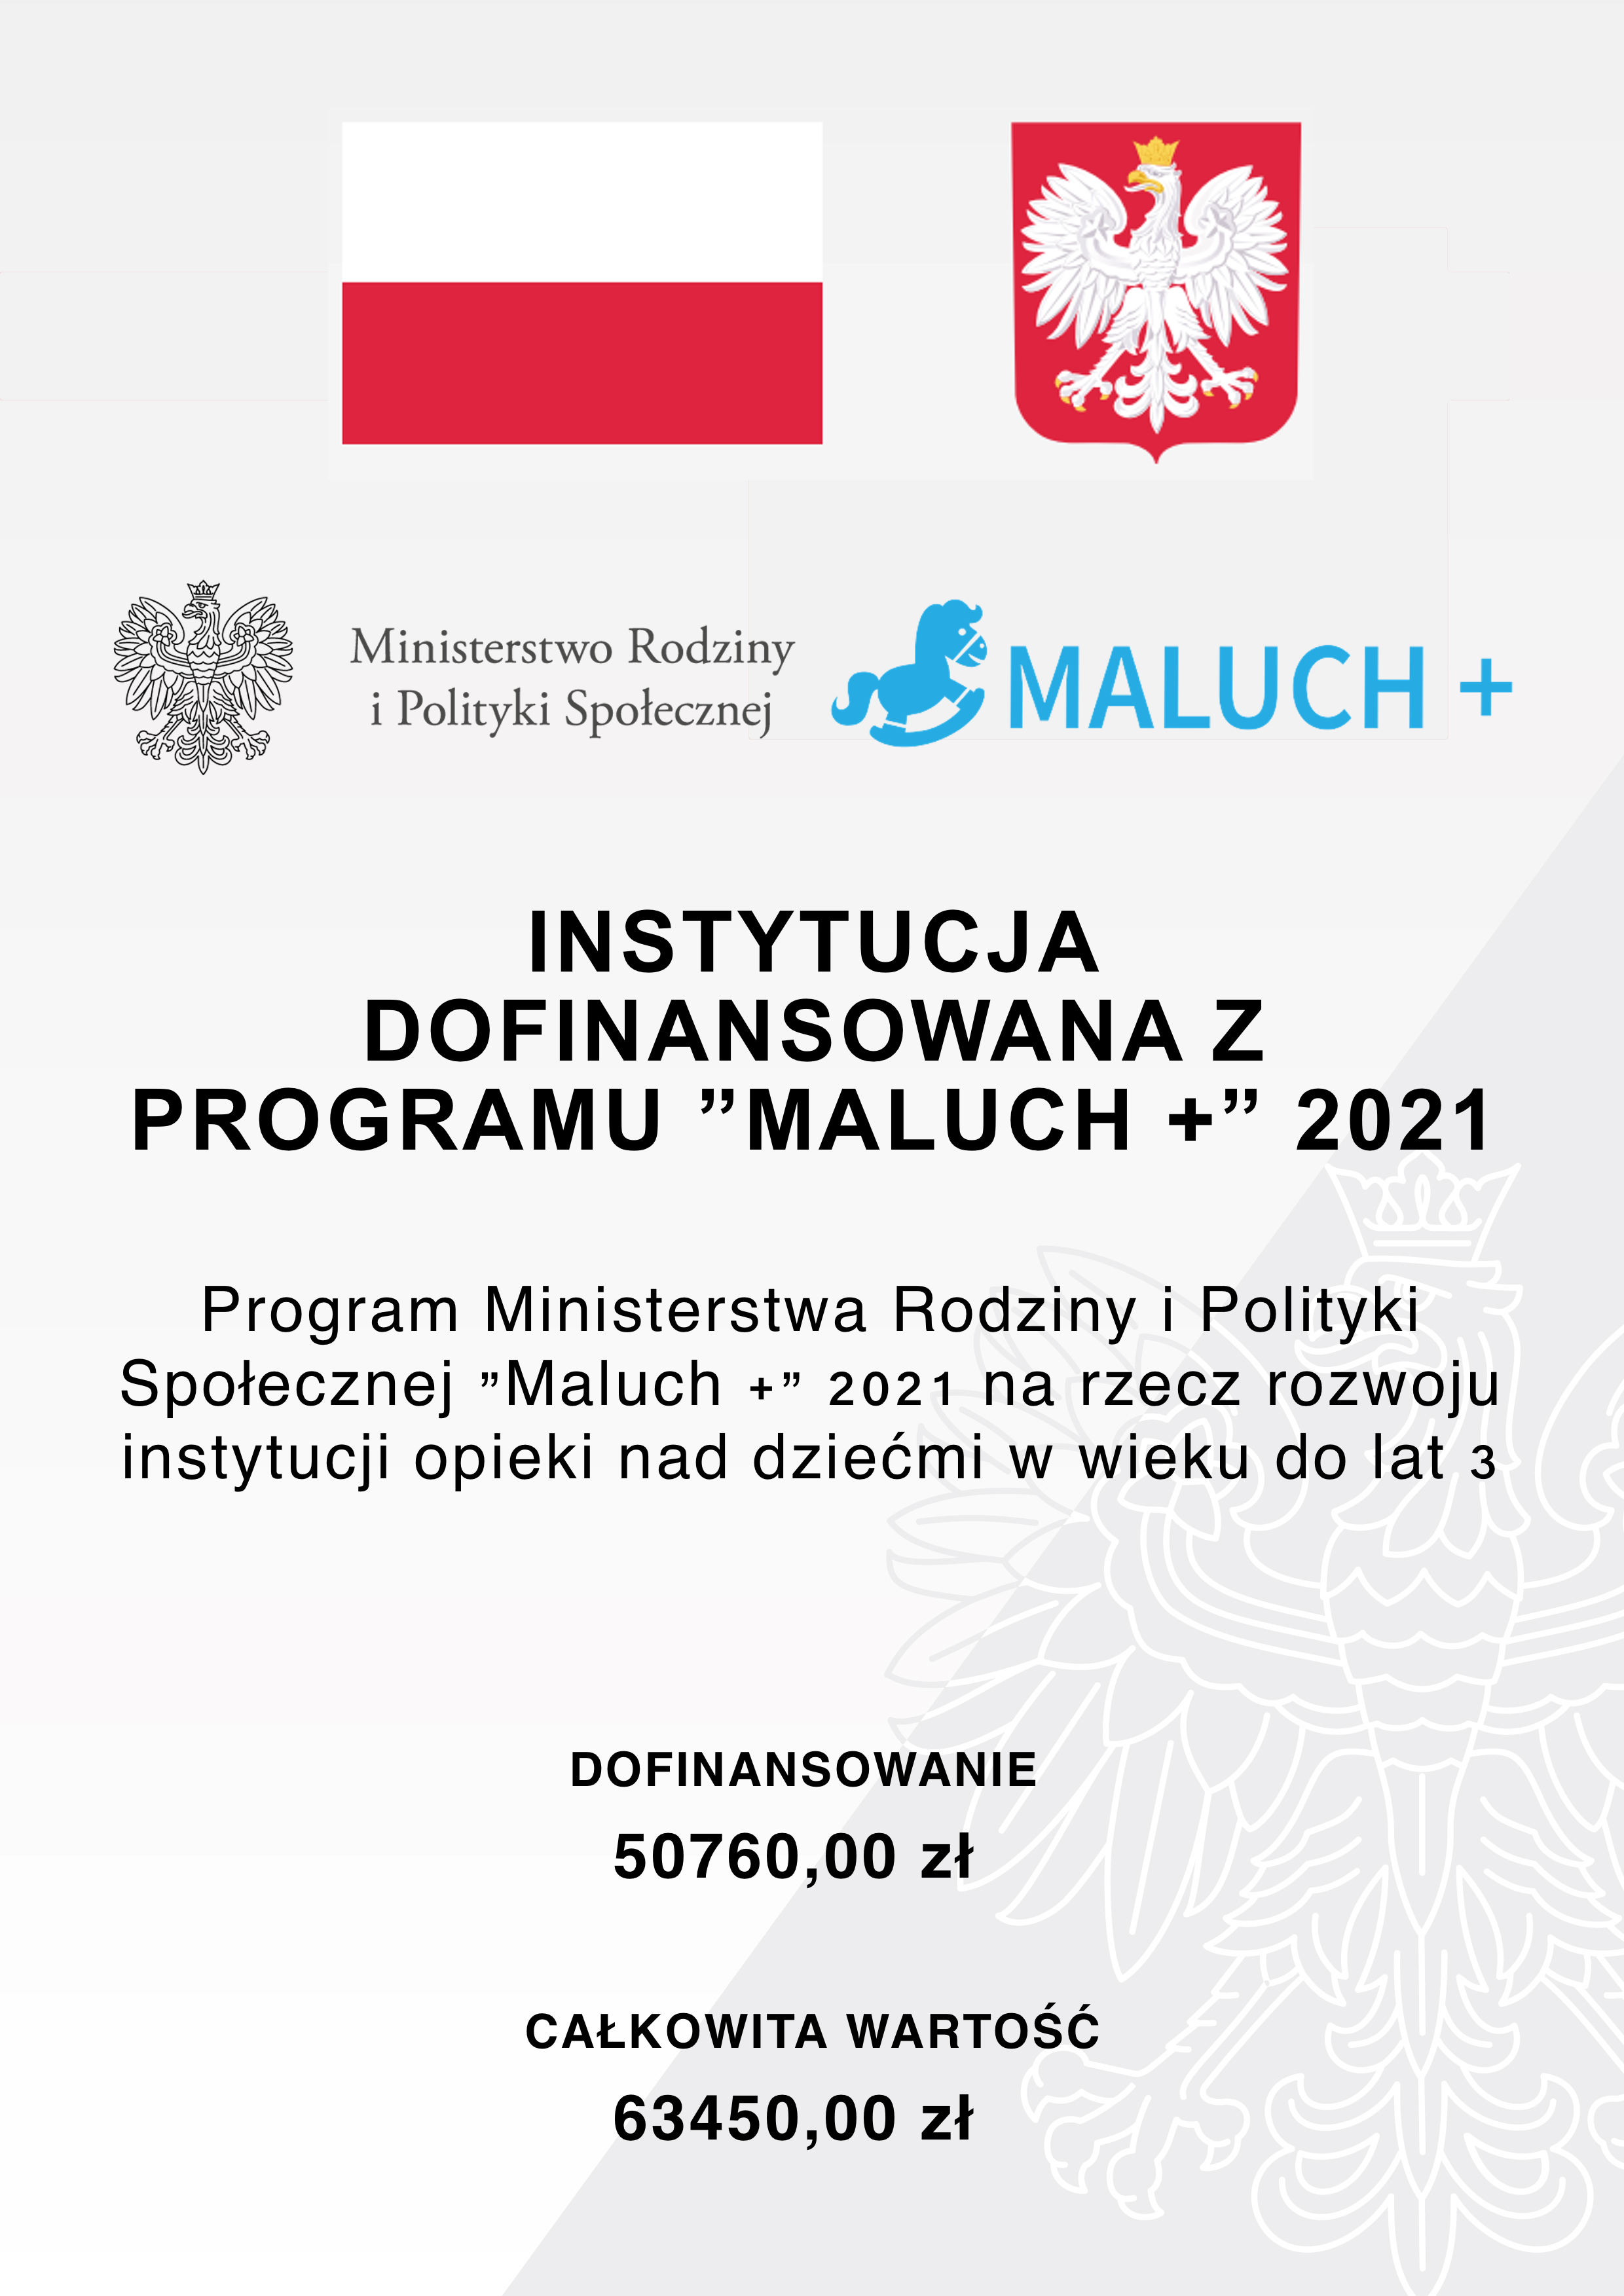 MALUCH+, zlobek-lopuszno.pl